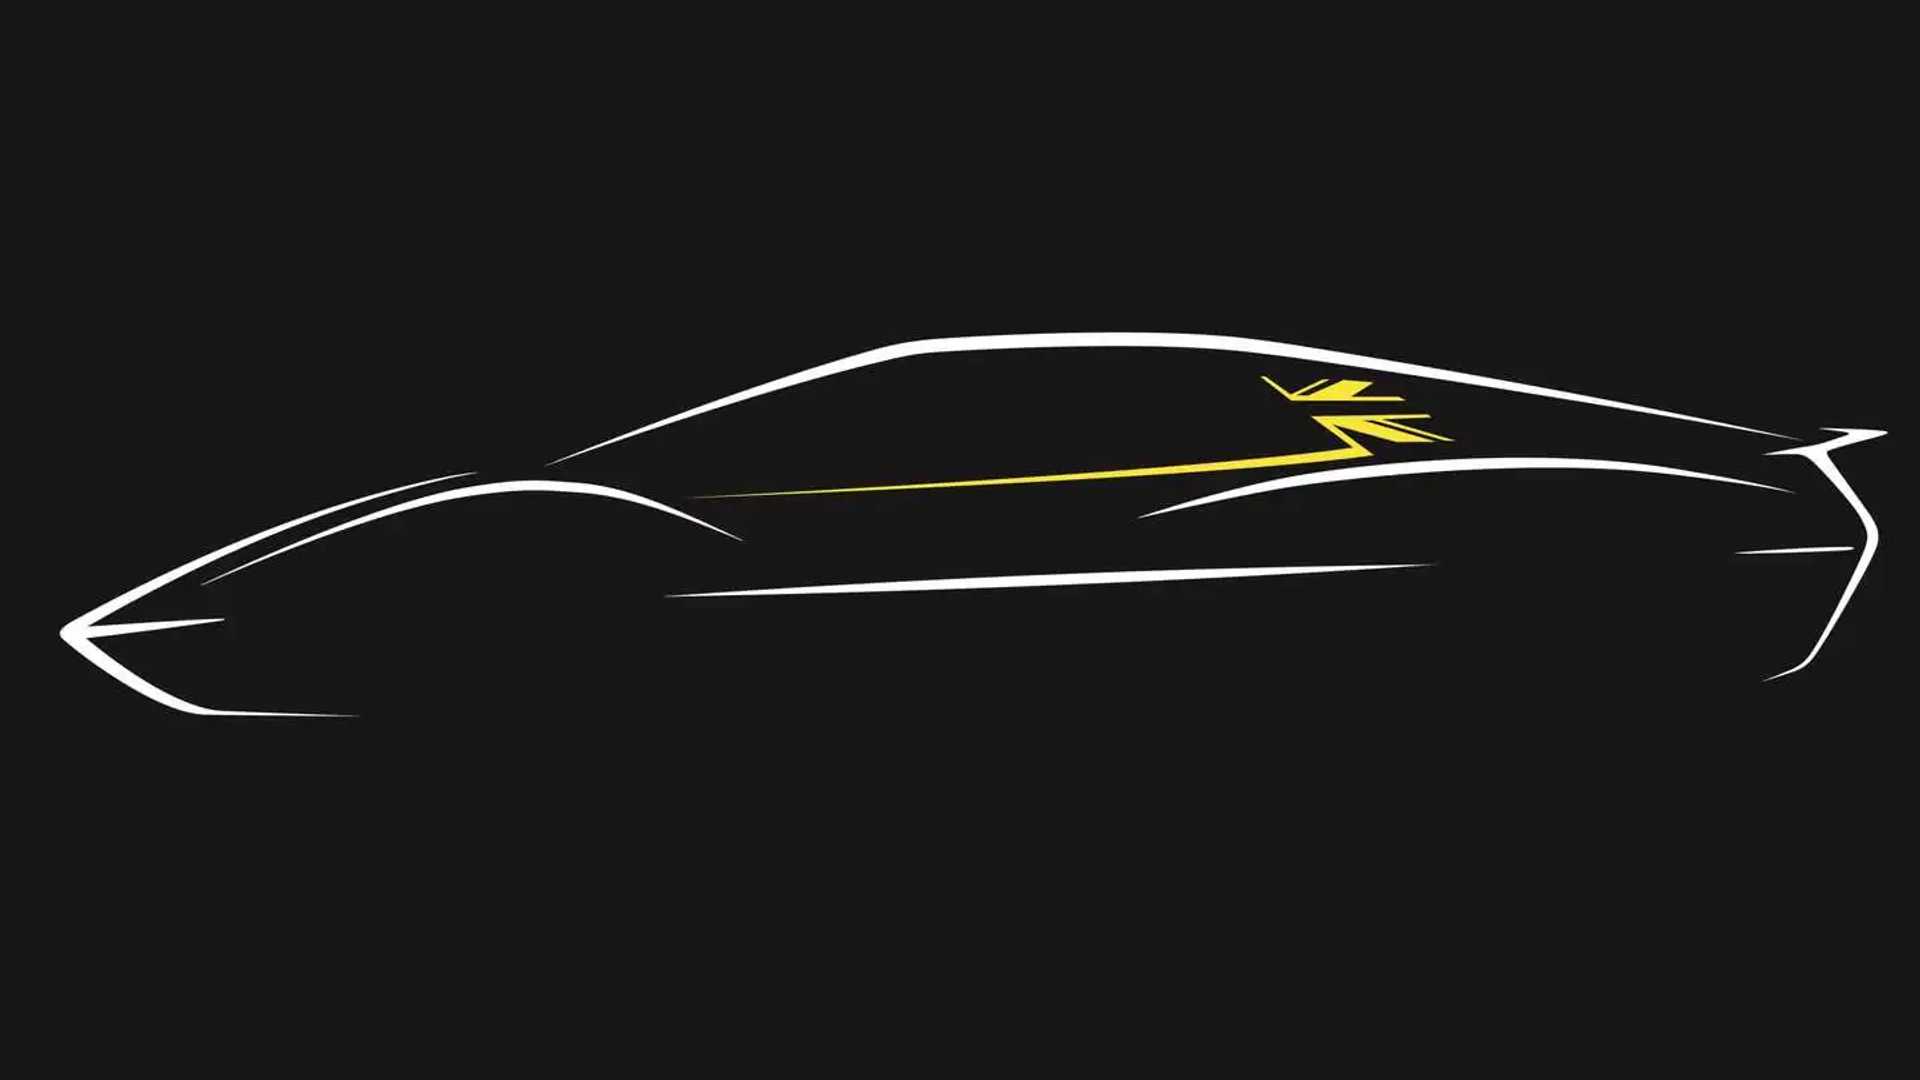 Lotus kommer att ersätta Emira med en elektrisk sportbil 2027